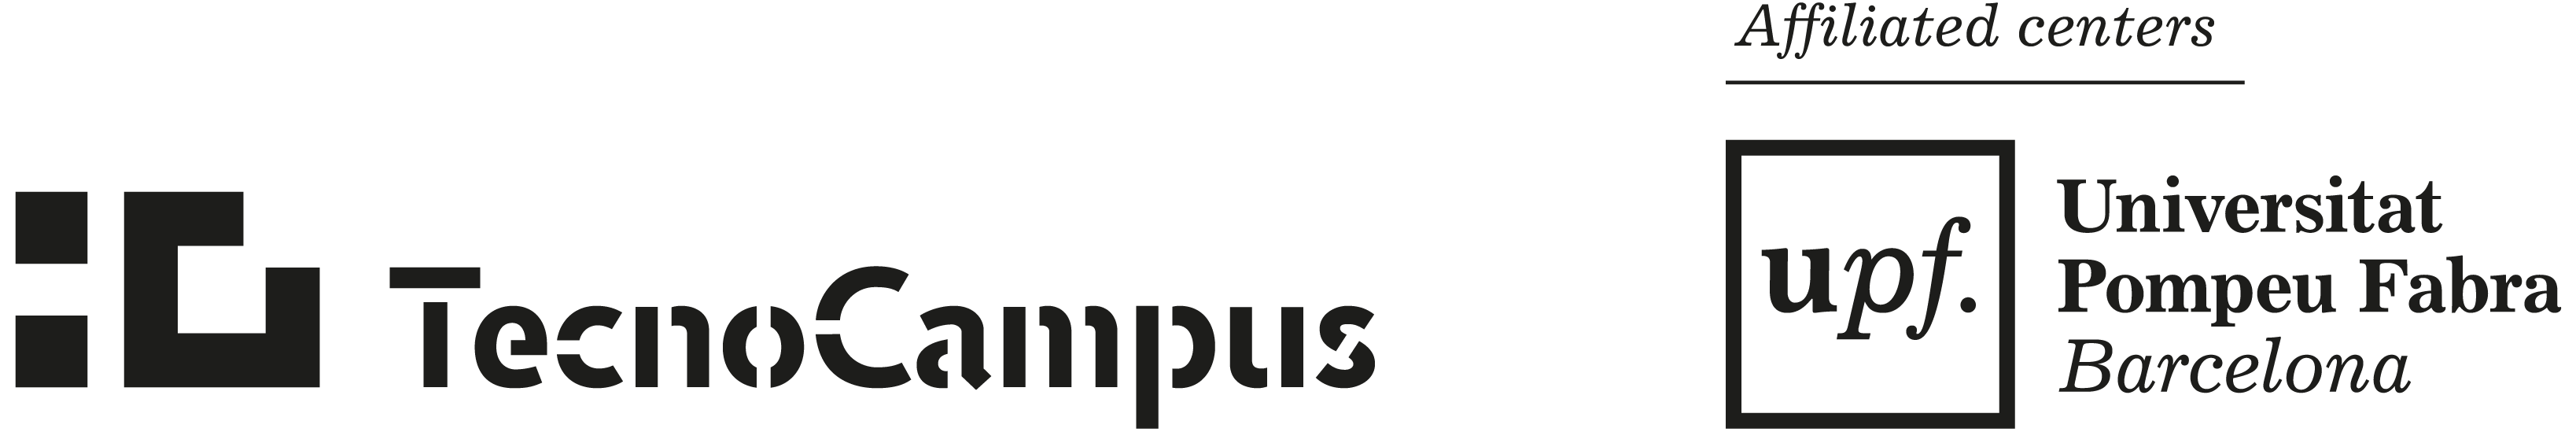 Logo of TecnoCampus